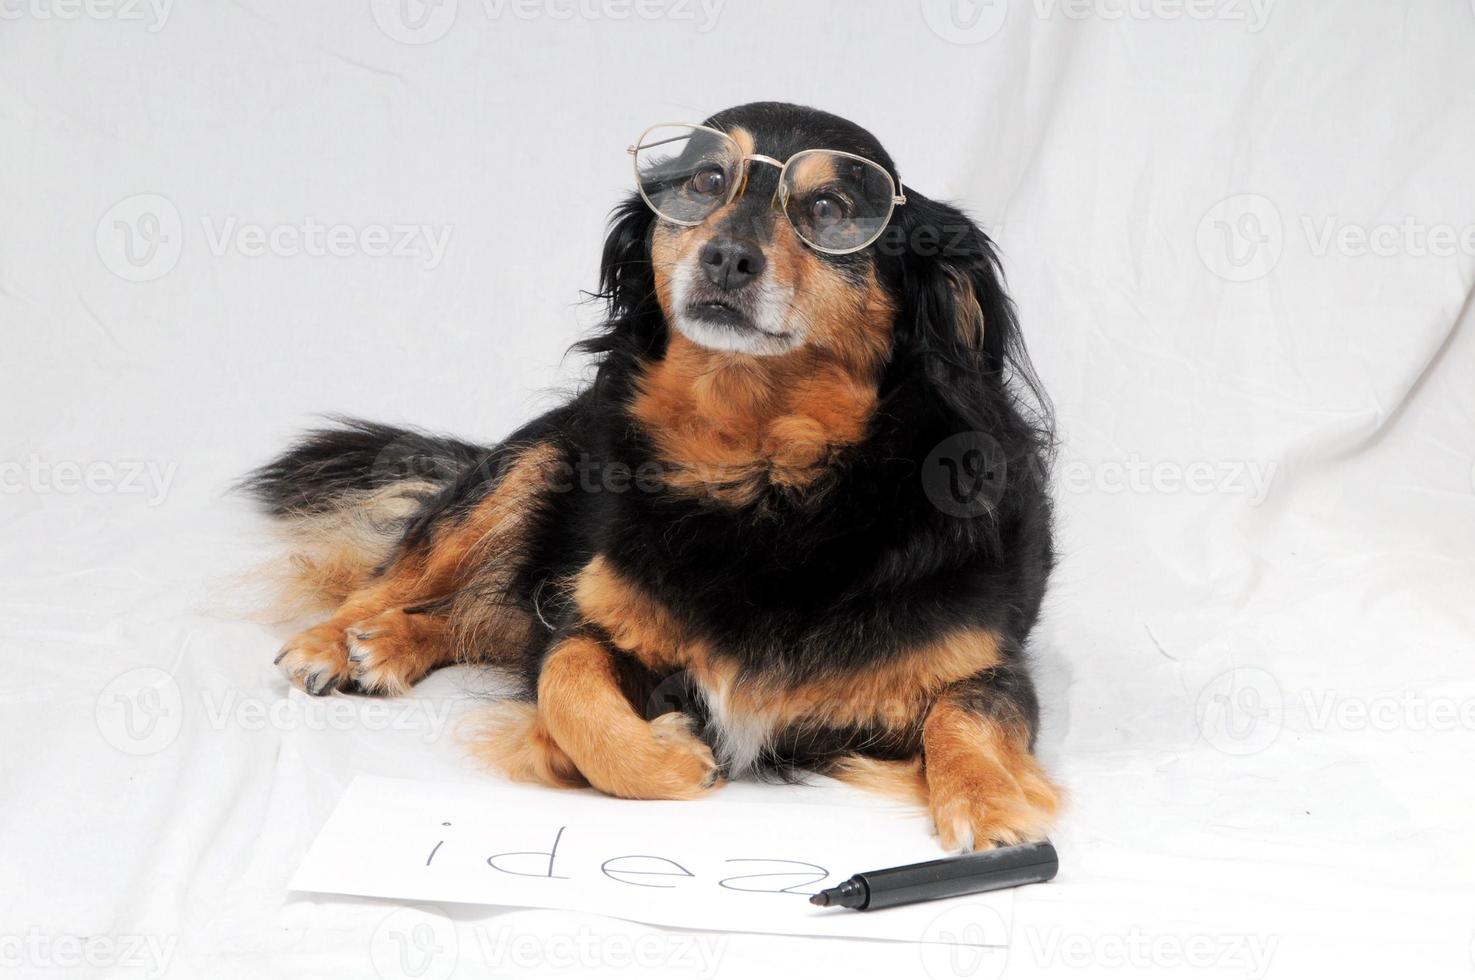 Dog wearing glasses photo